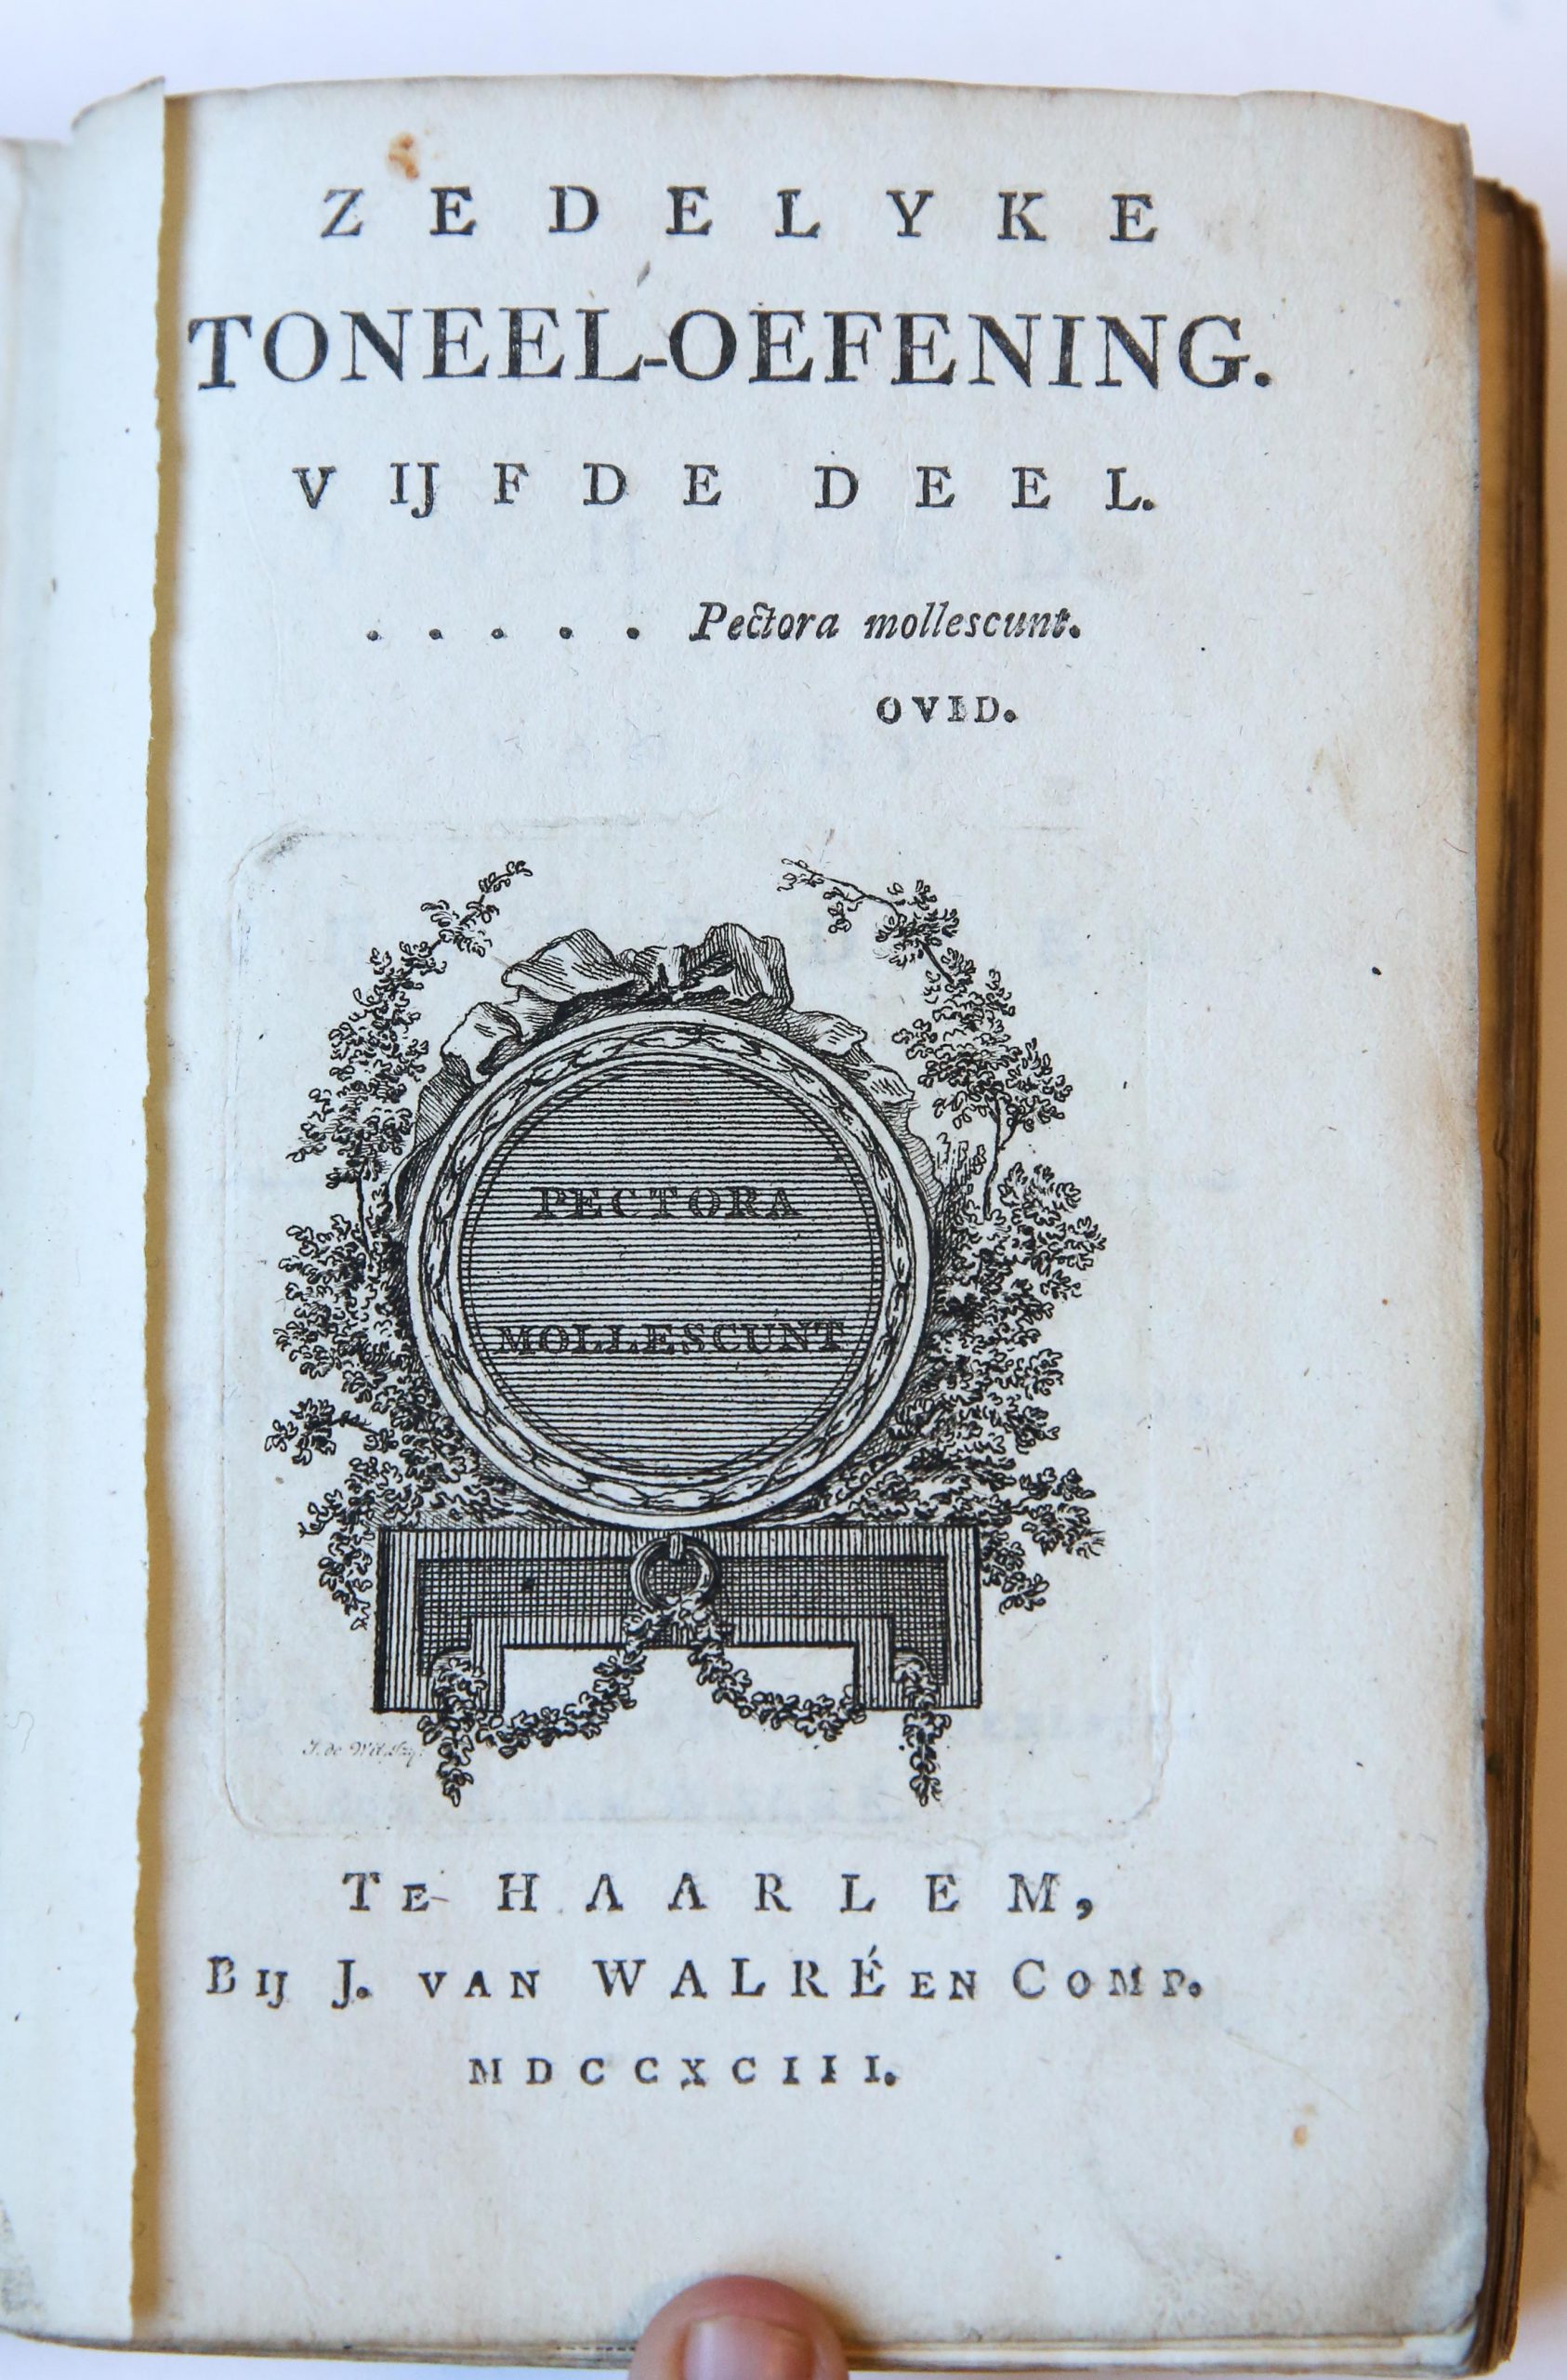 [Theatre, rare 1793] Zedelyke toneel-oefening. Vijfde deel, Haarlem, bij J. van Walré en Comp. 1793, 51+138+89 pp.